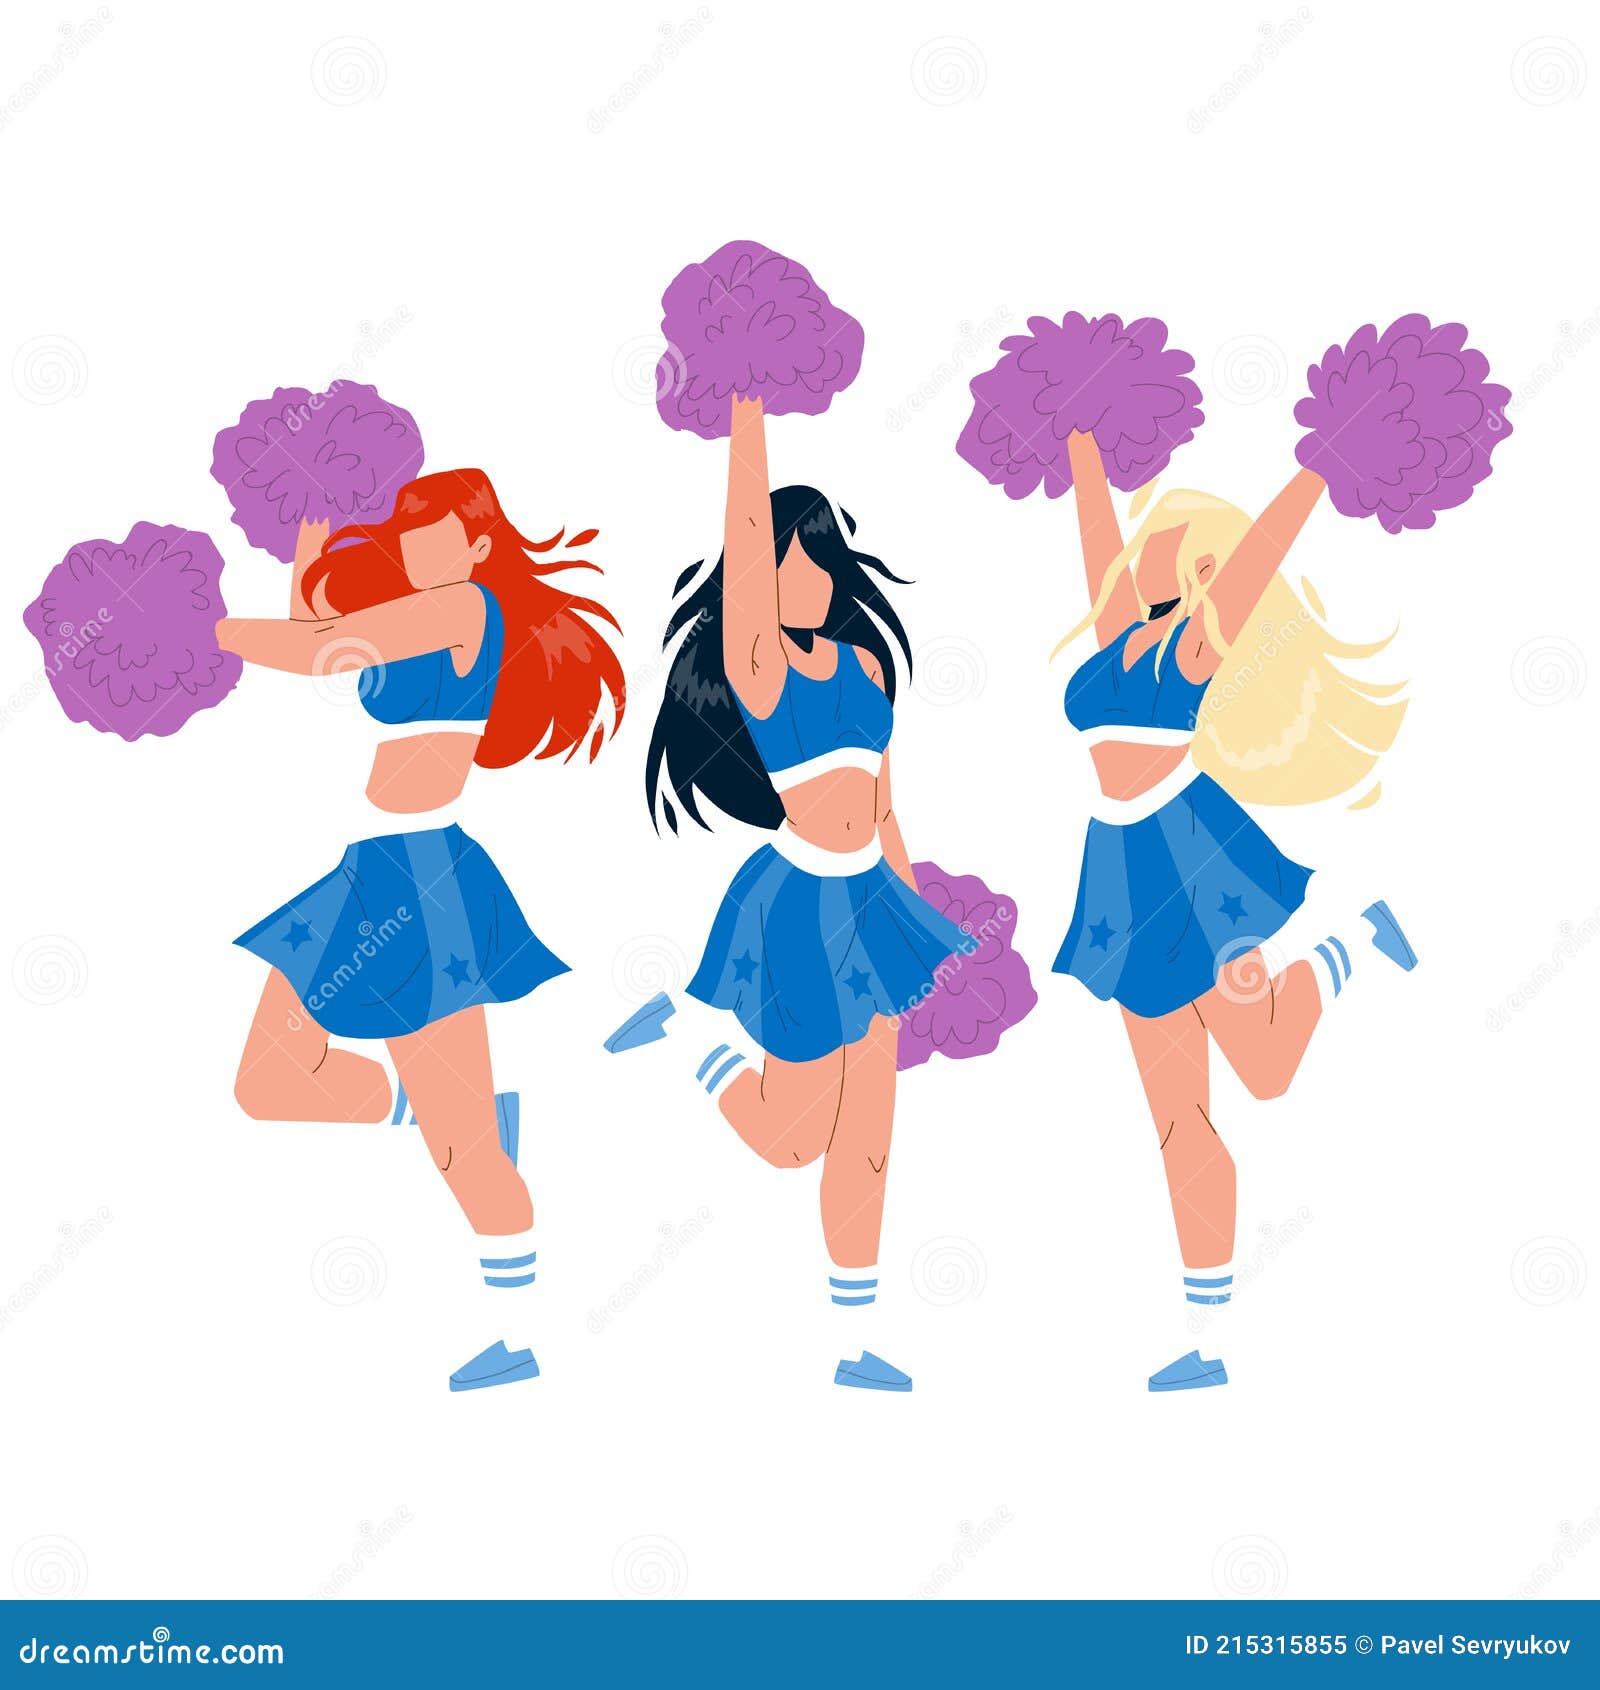 Cheerleaders Girls Dancing with Pompoms Vector Stock Vector